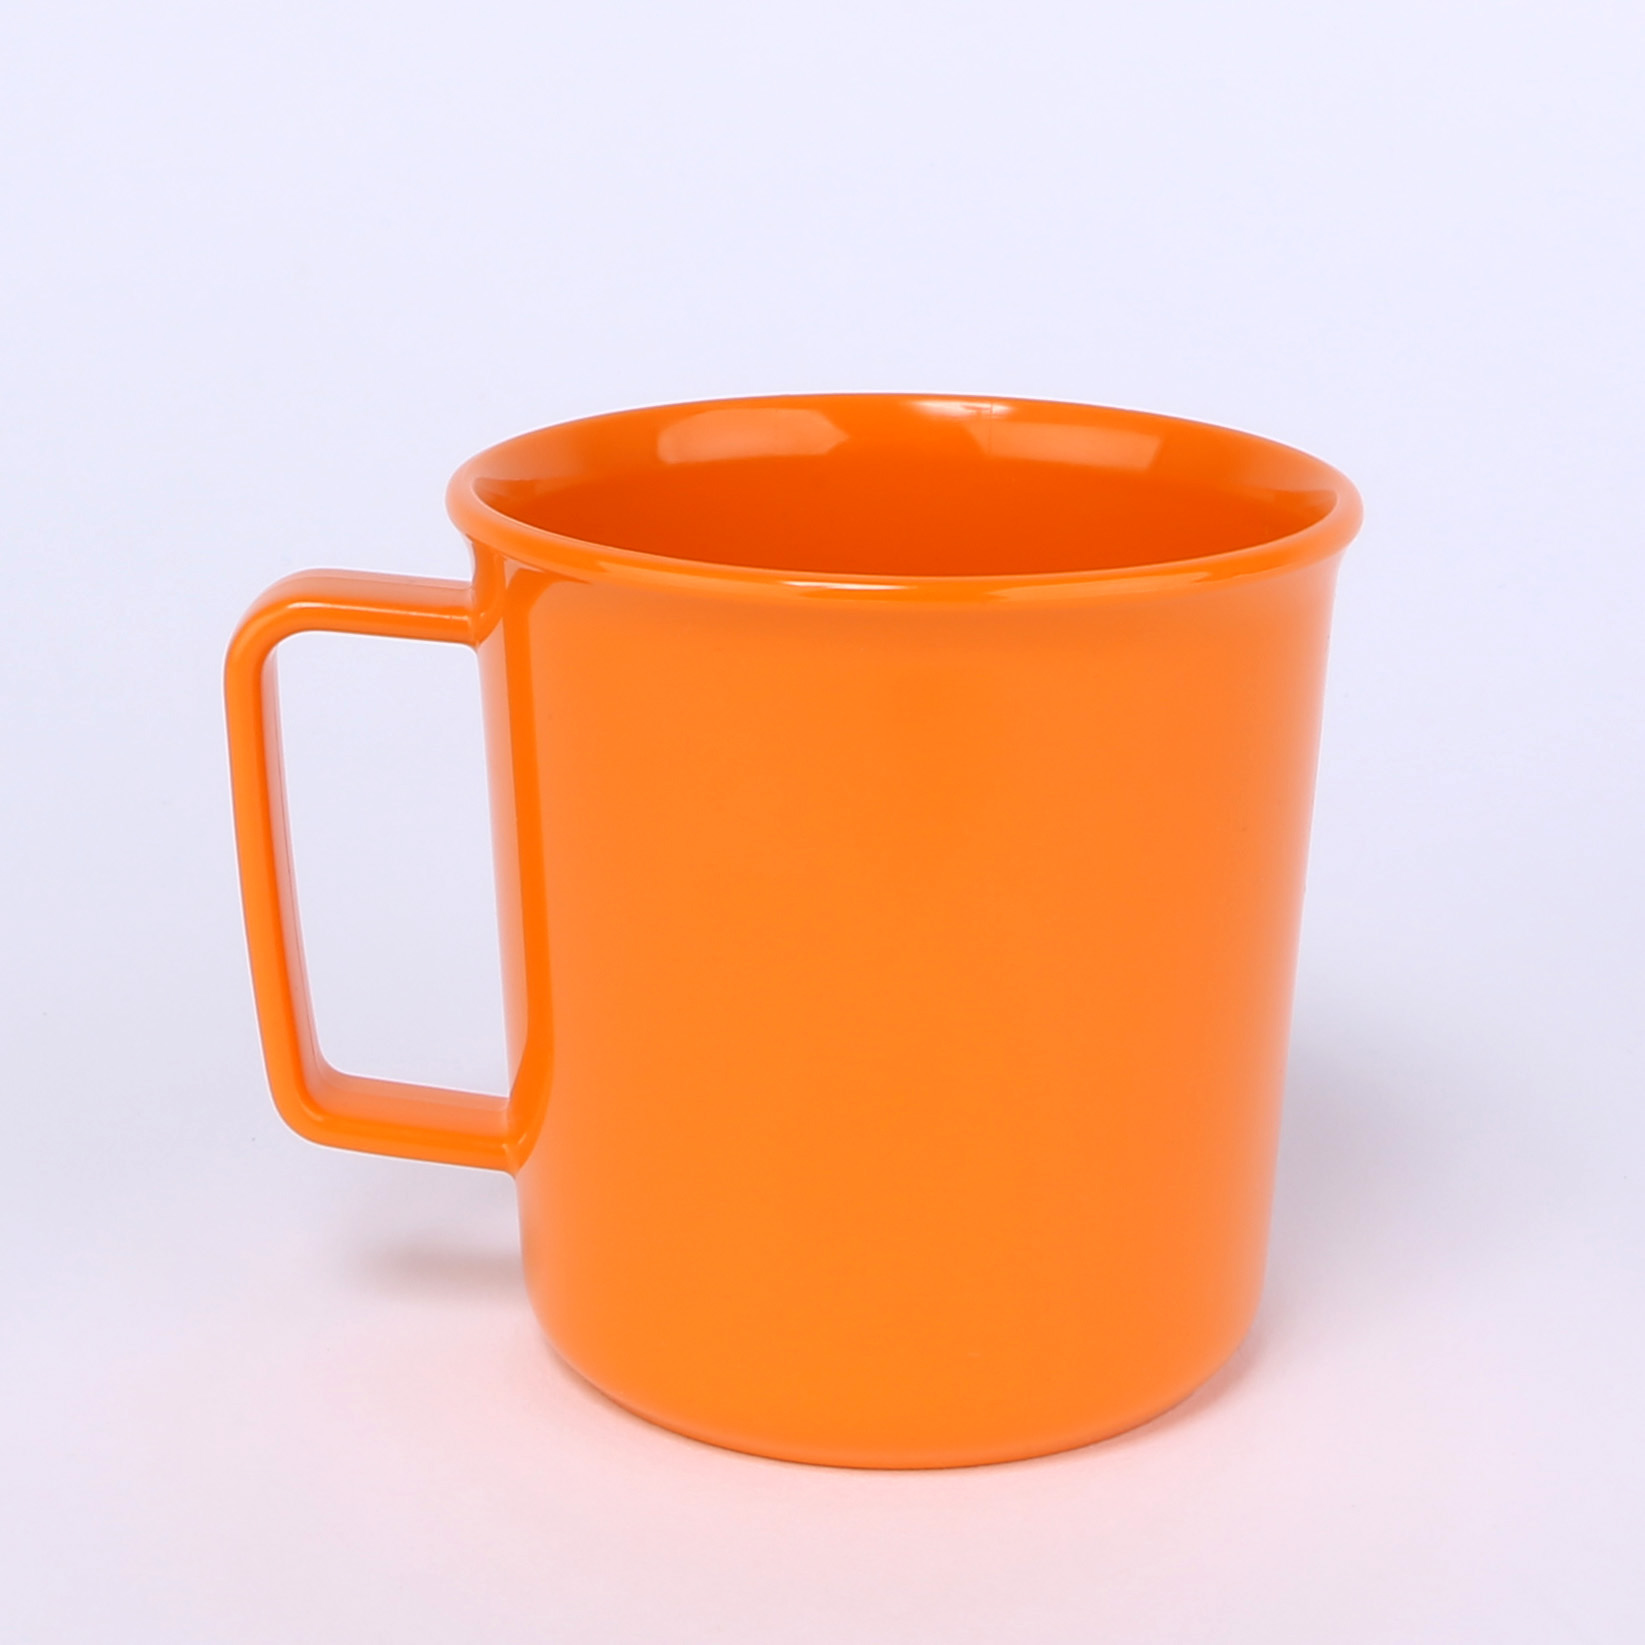 vaLon Zephyr Henkelbecher 0,2 L aus schadstofffreiem Kunststoff in der Farbe orange.